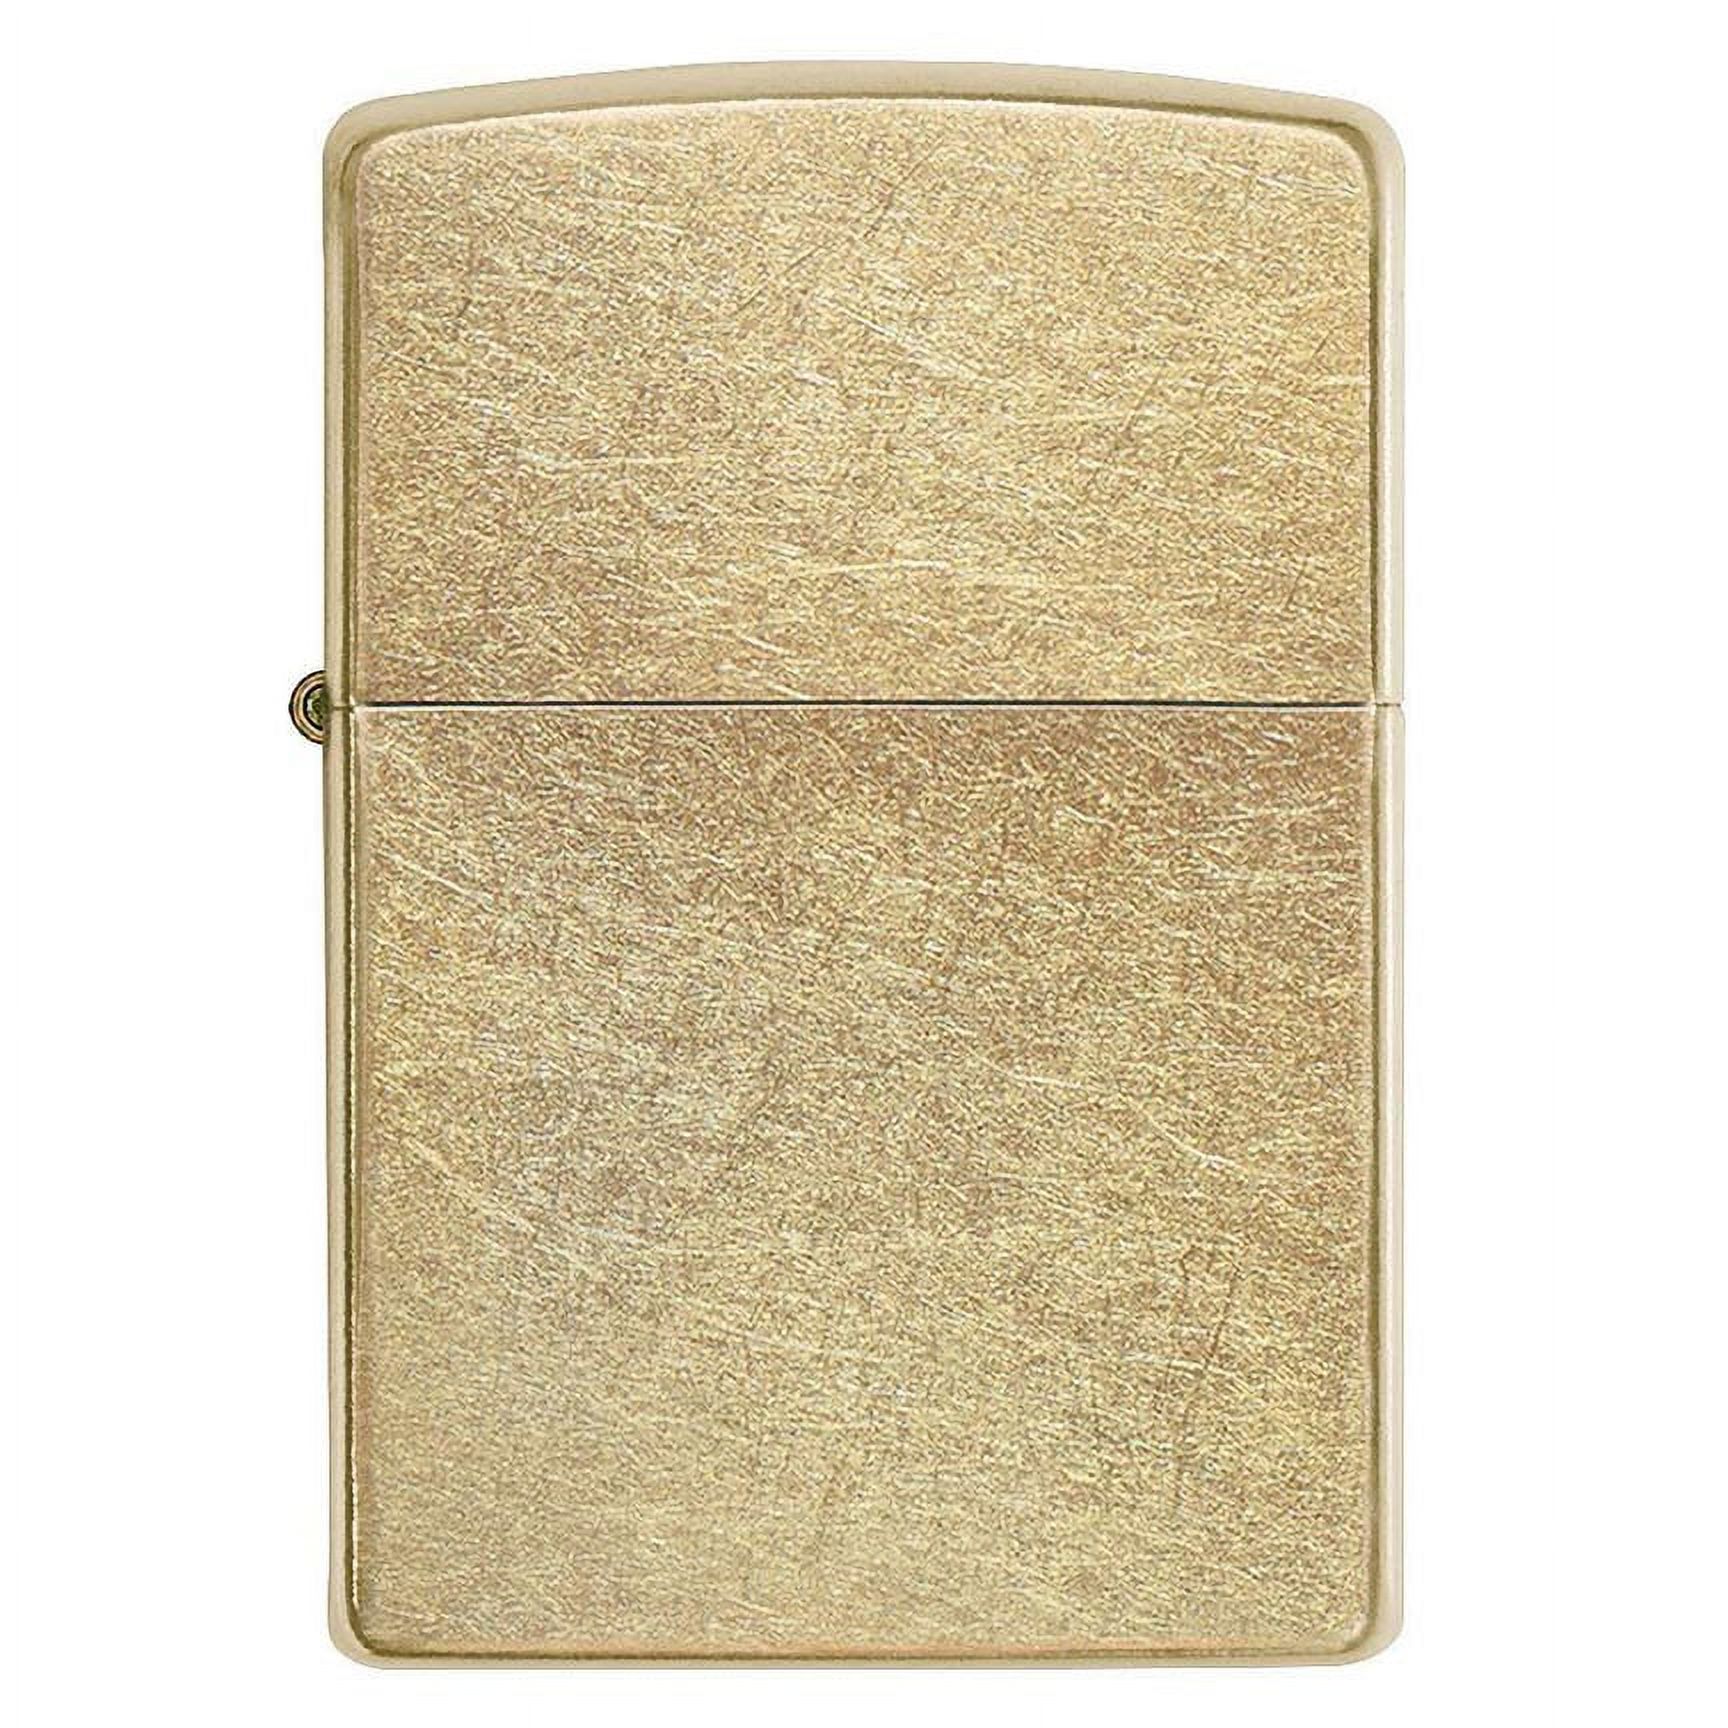 Zippo Gold Dust Pocket Lighter - image 1 of 2